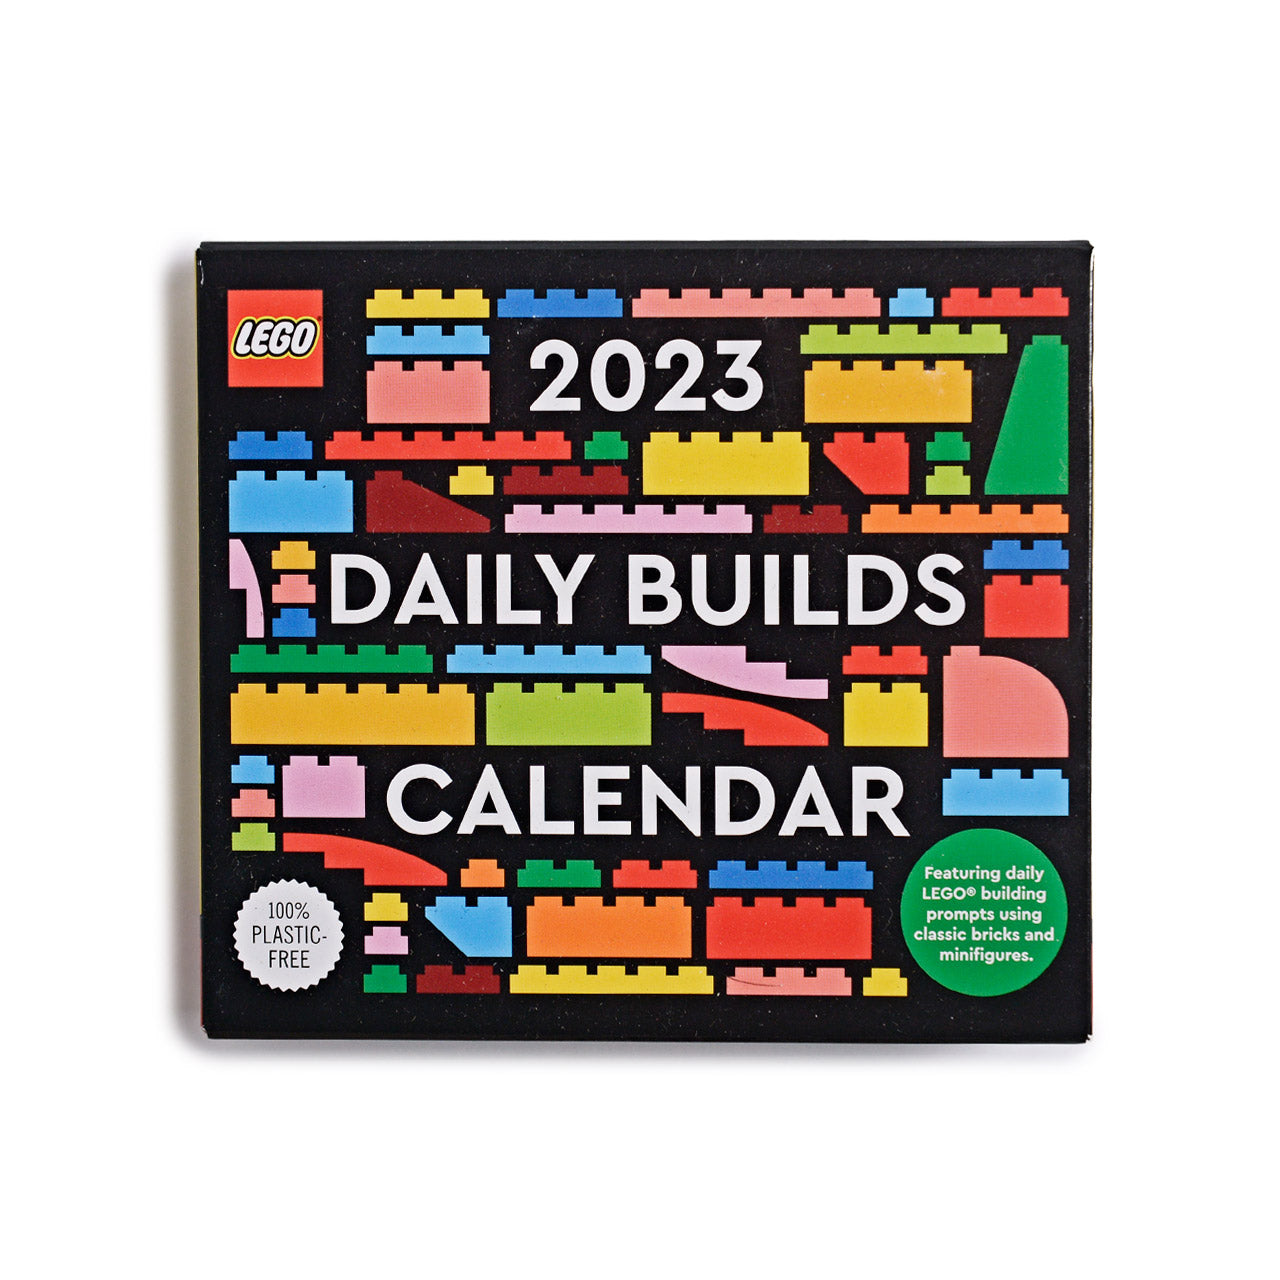 LEGO 2023 Daily Builds Calendar